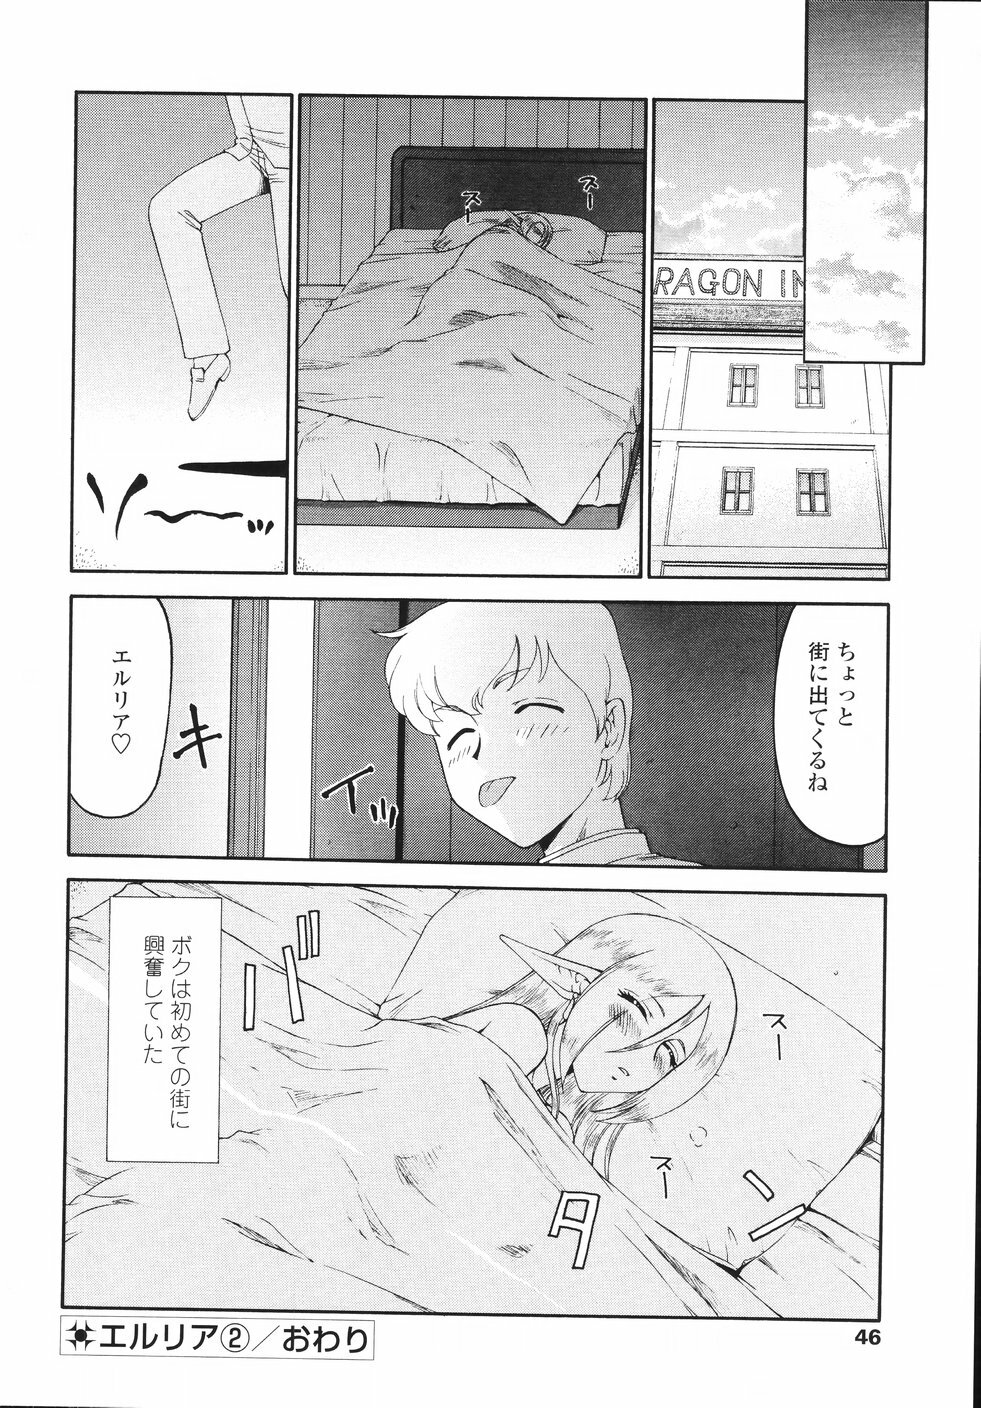 [Taira Hajime] Eruria page 49 full